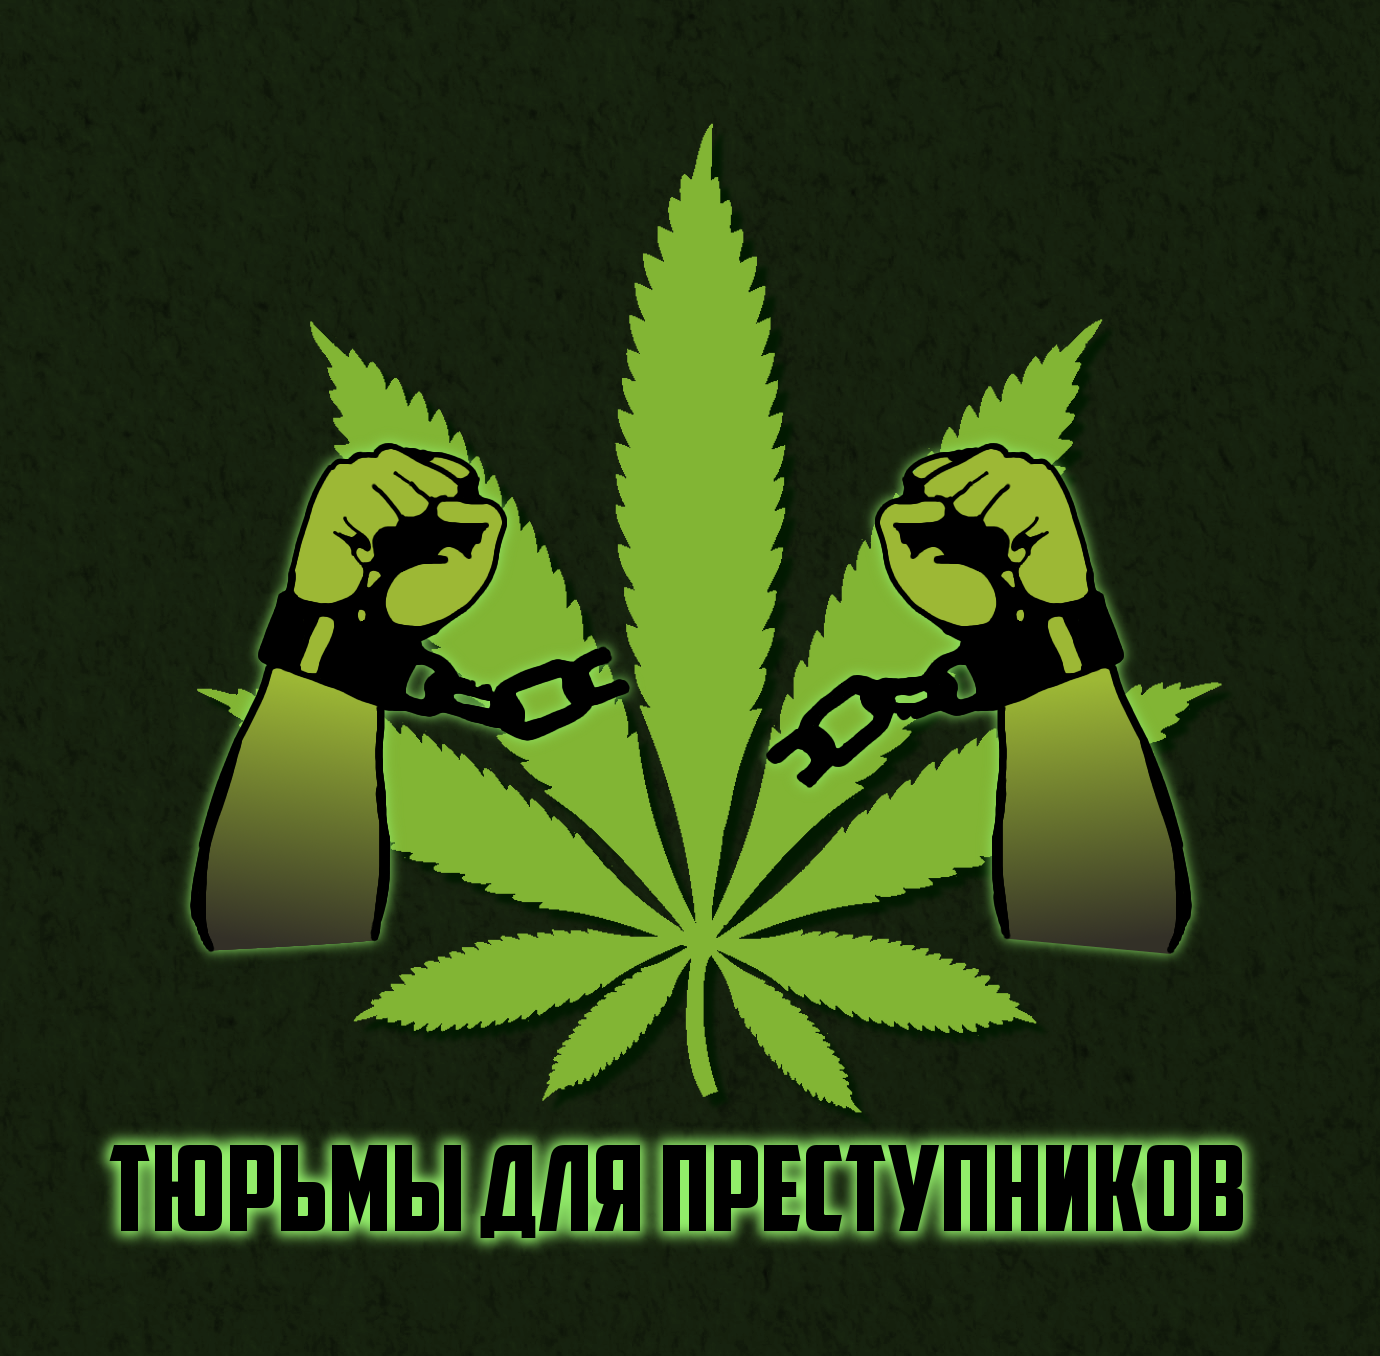 В моче нашли остатки марихуаны unity player для tor browser hudra